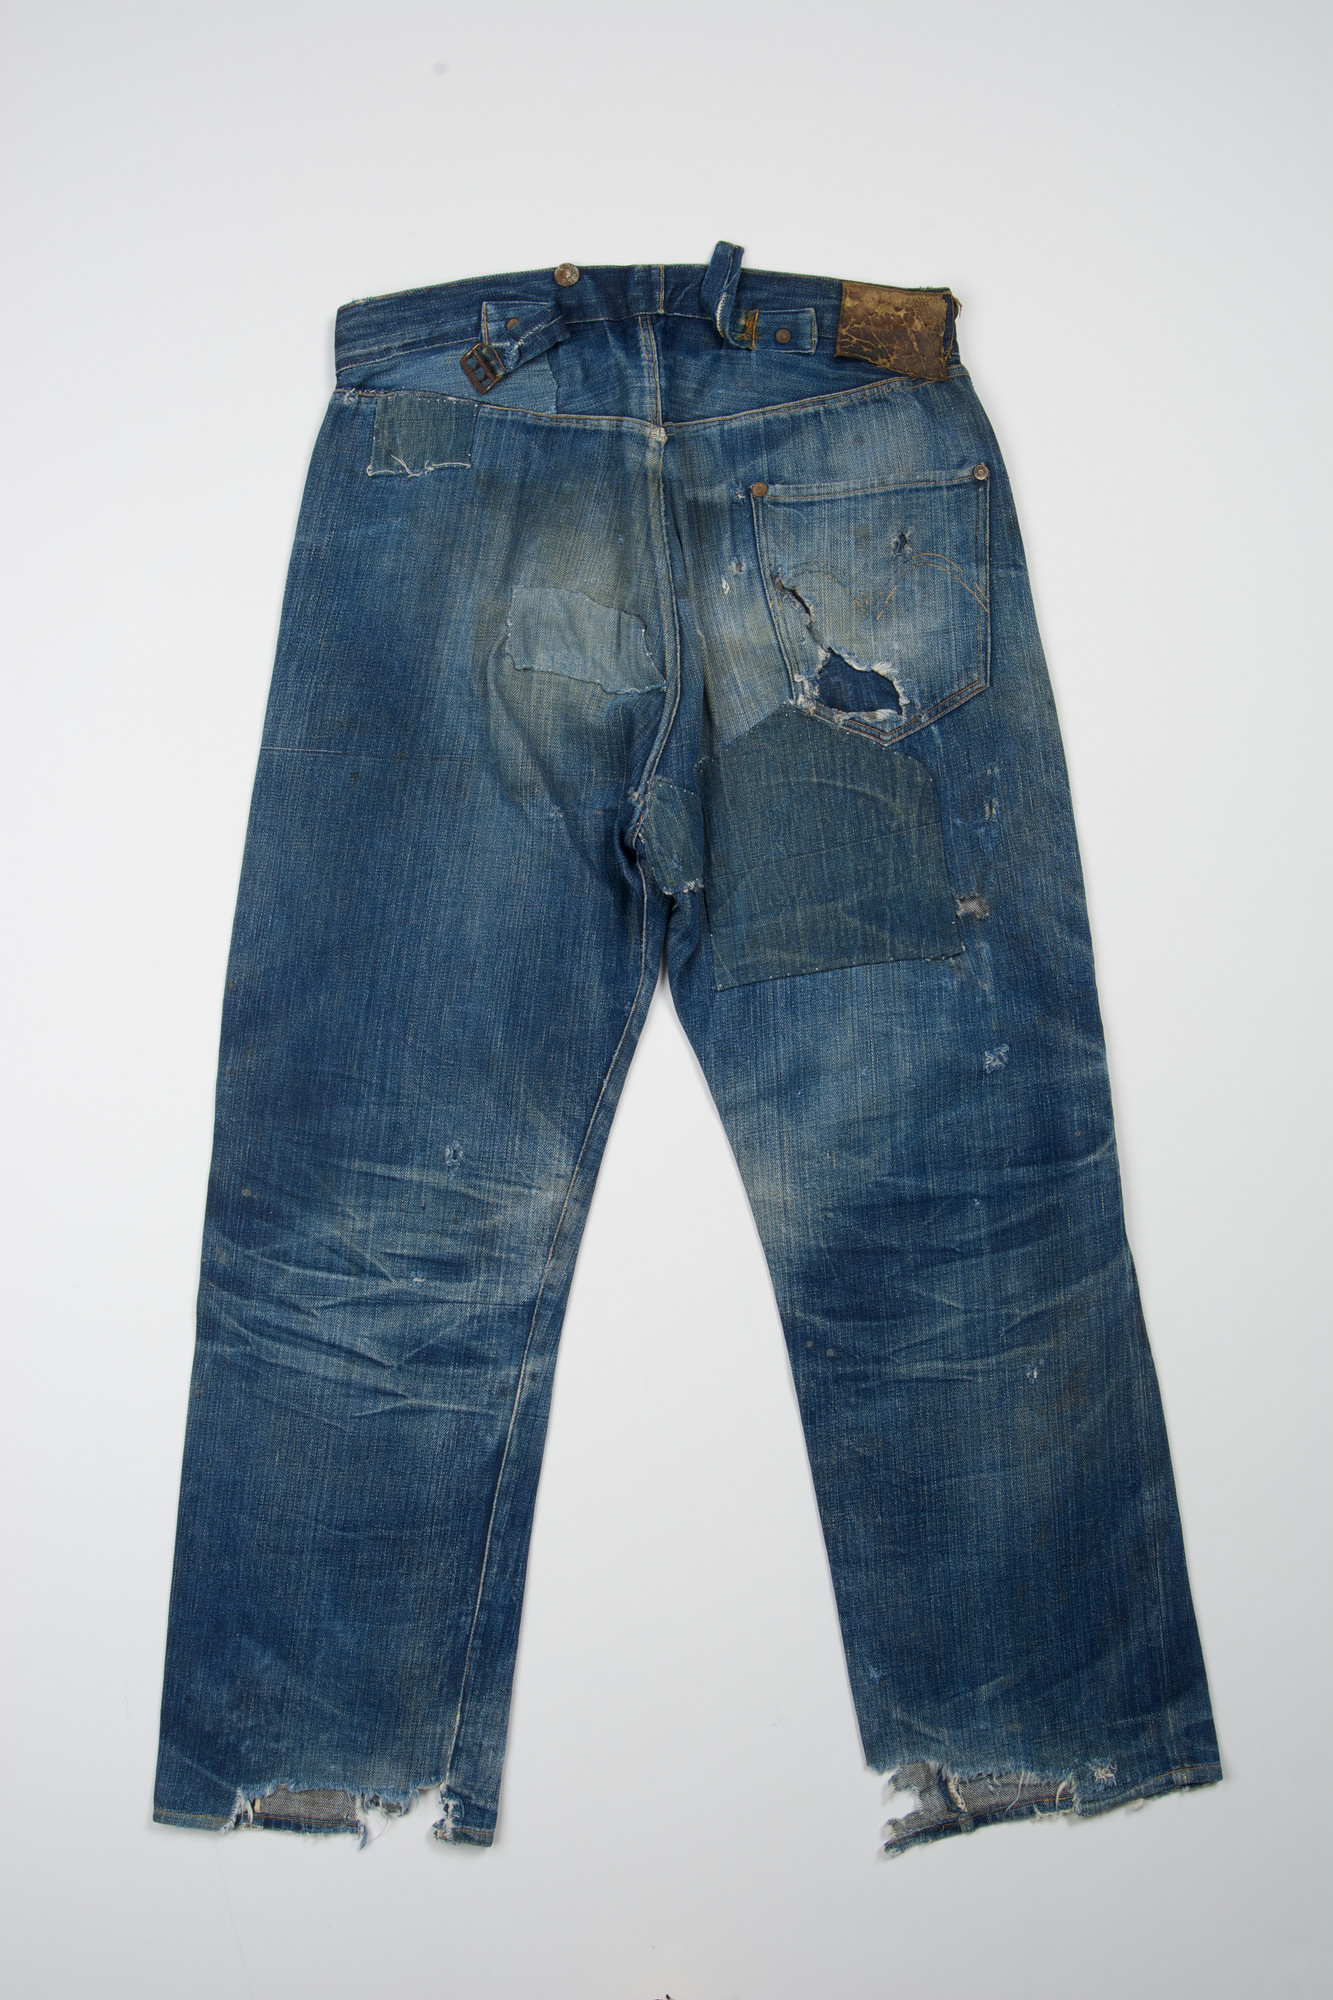 levi's 1890 jeans